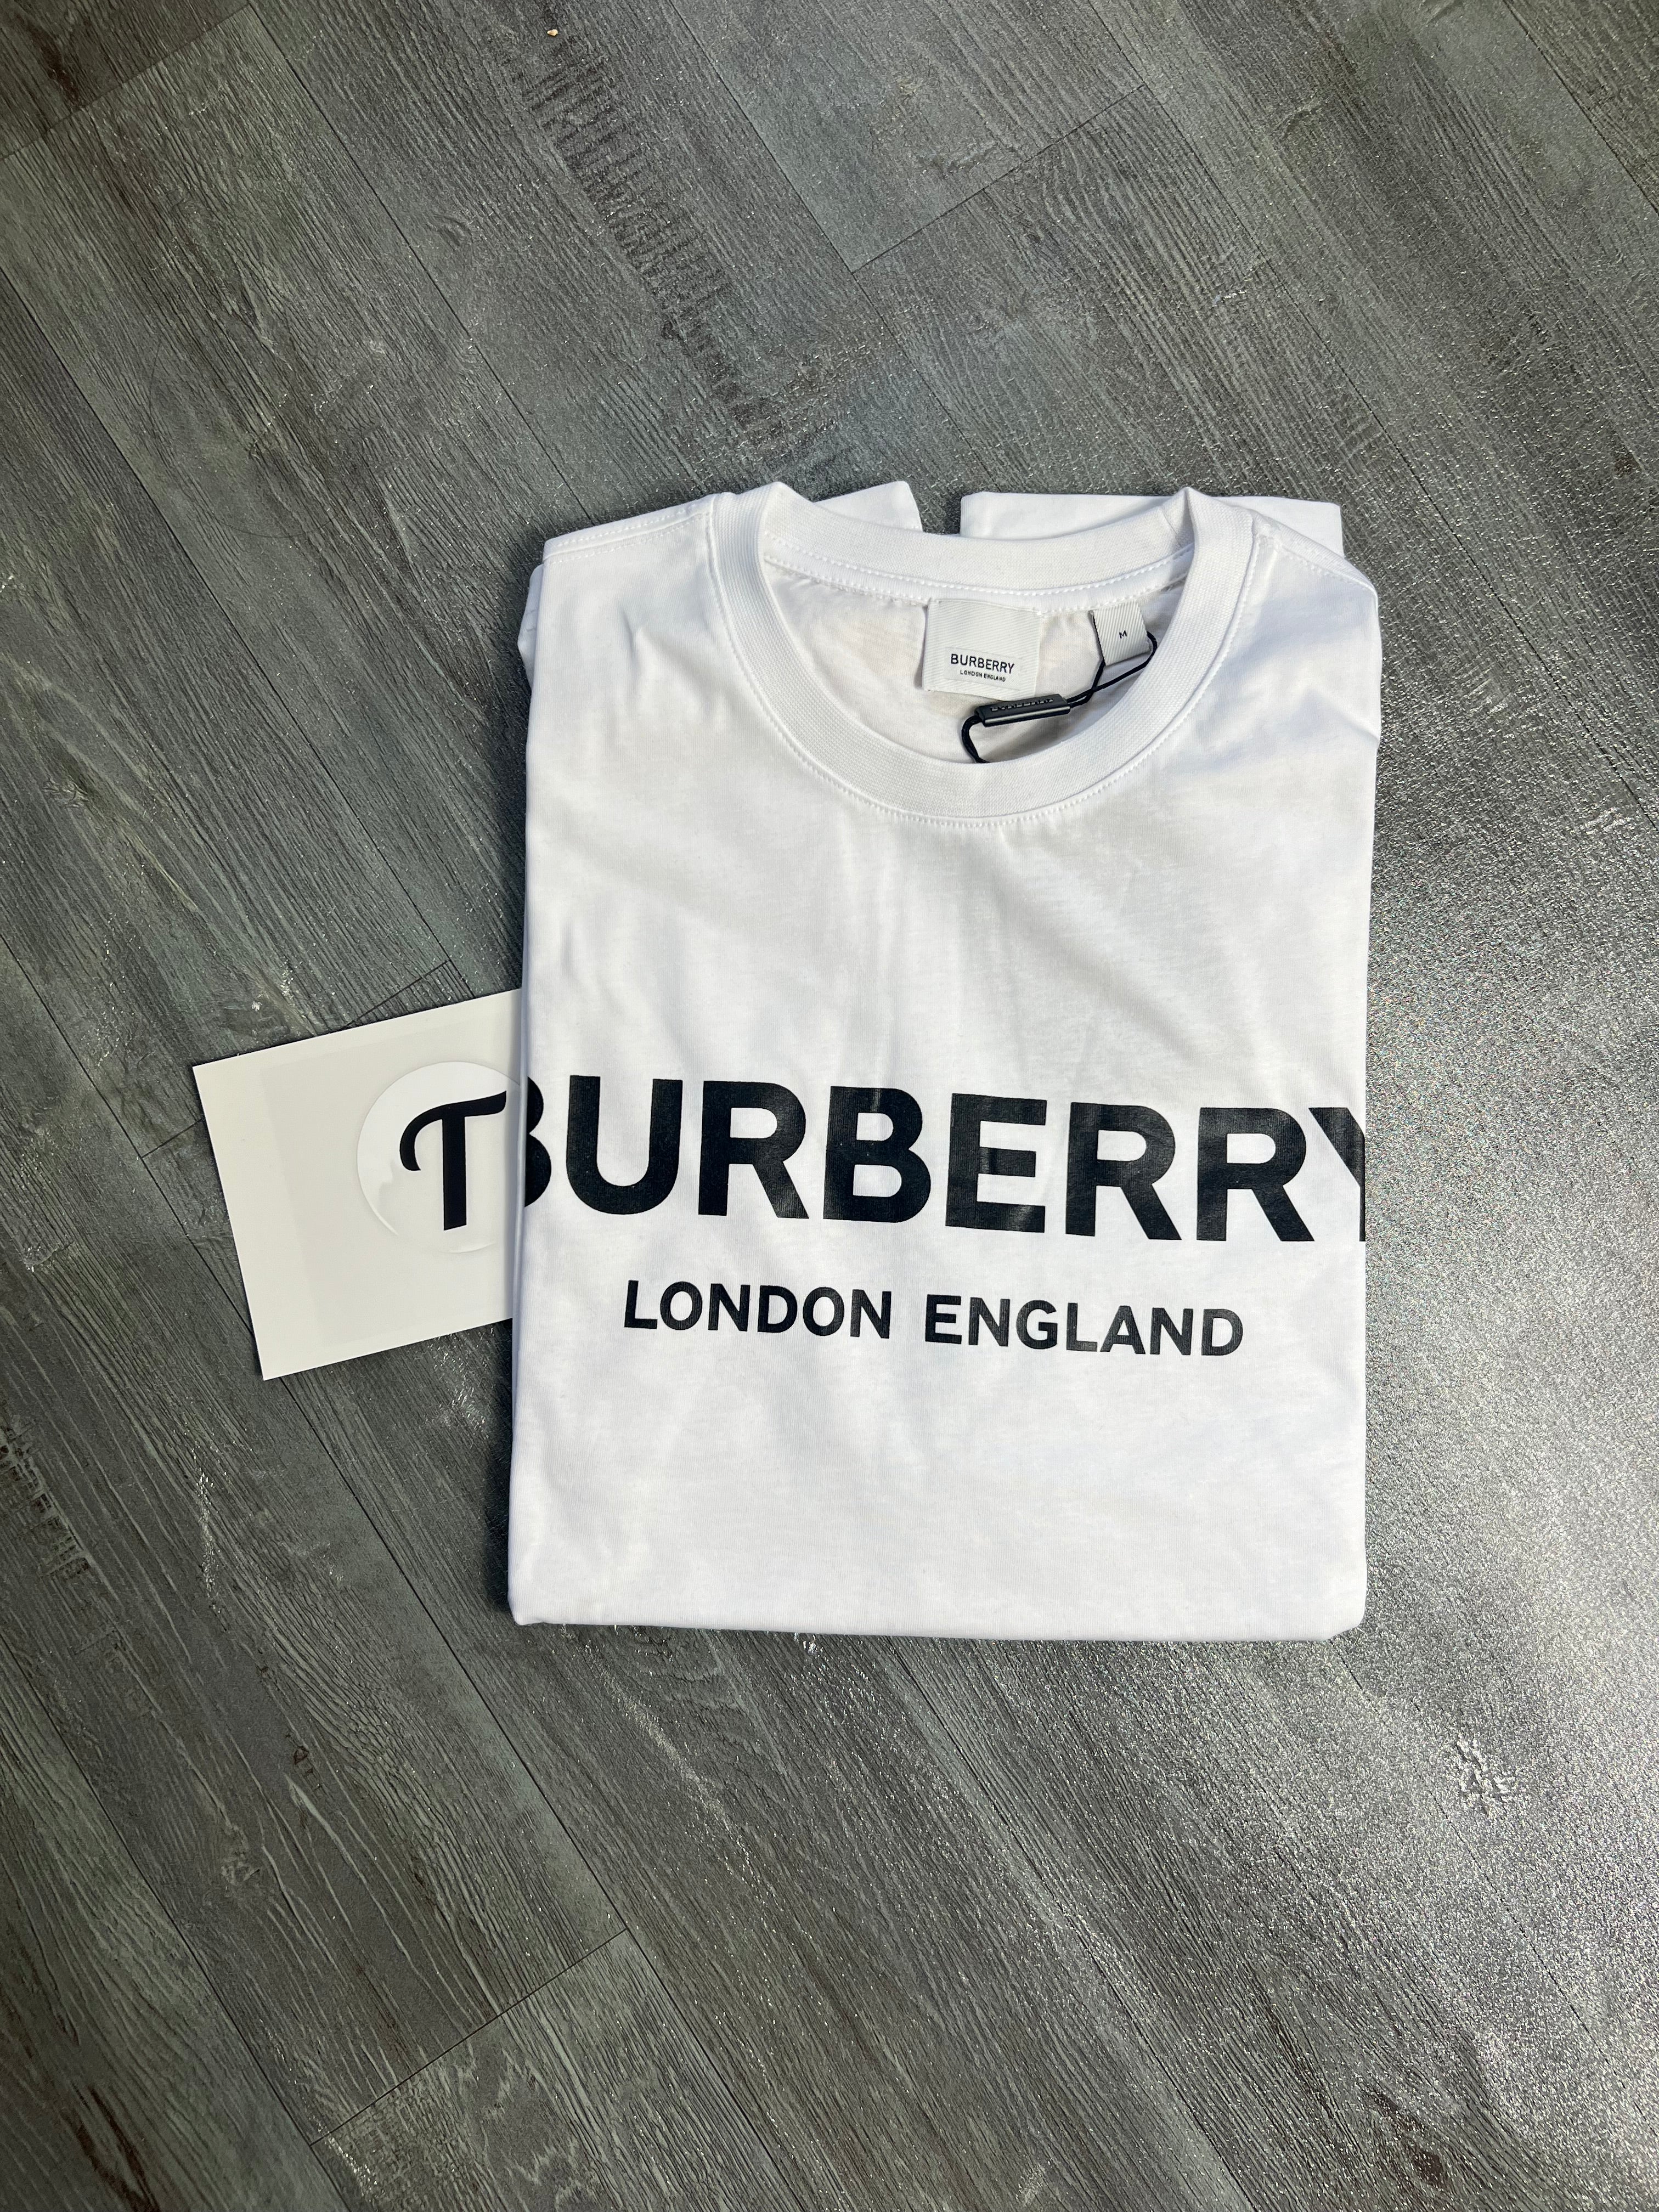 Burberry London England Tshirt White